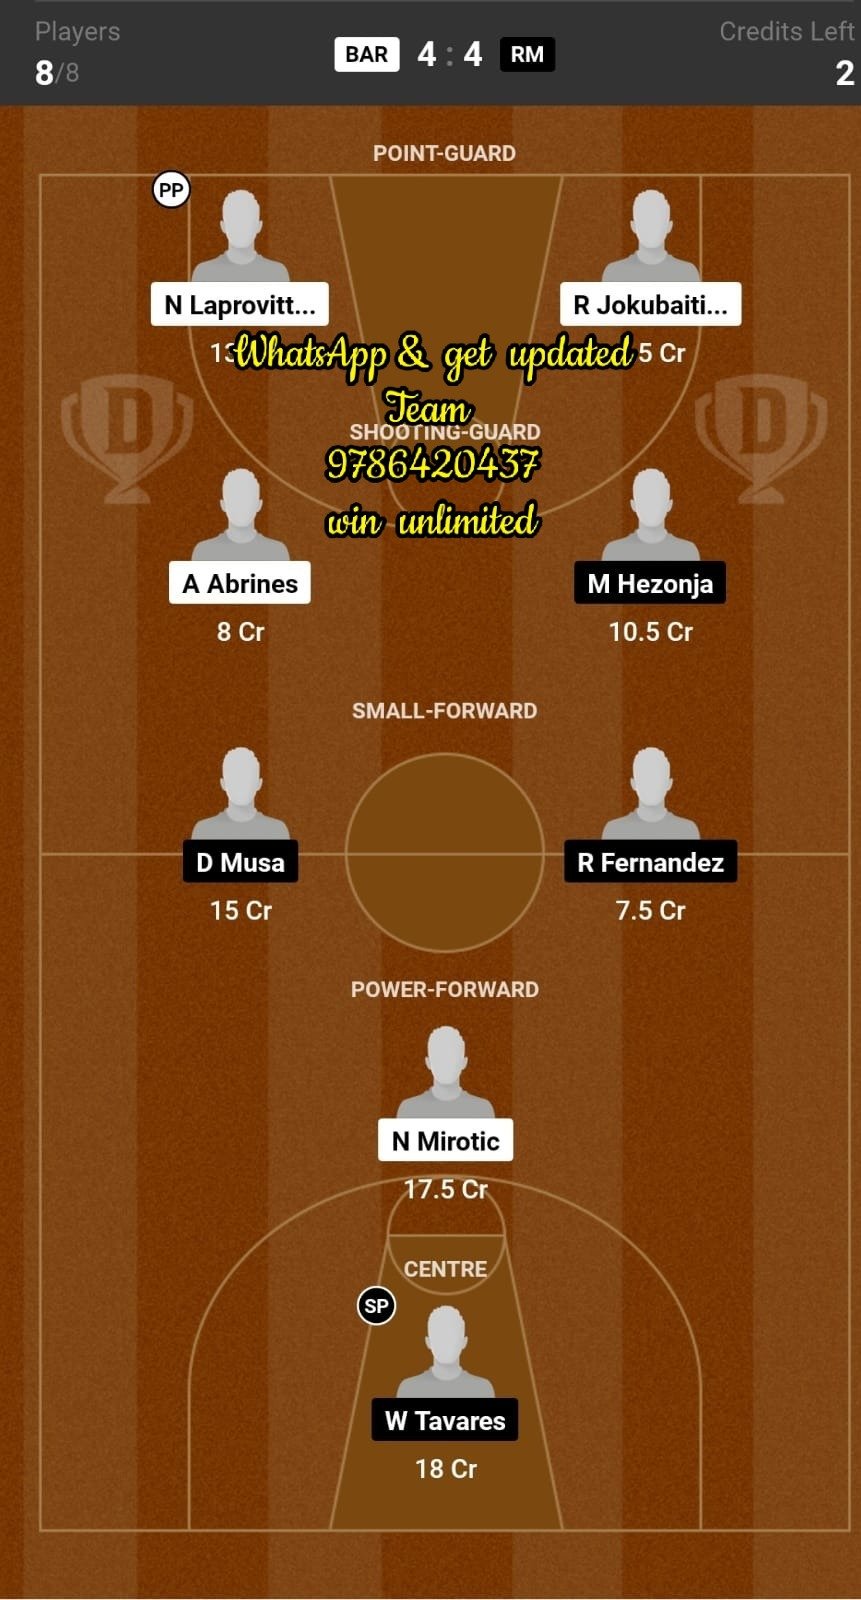 BAR vs RM Dream11 Team fantasy Prediction EuroLeague